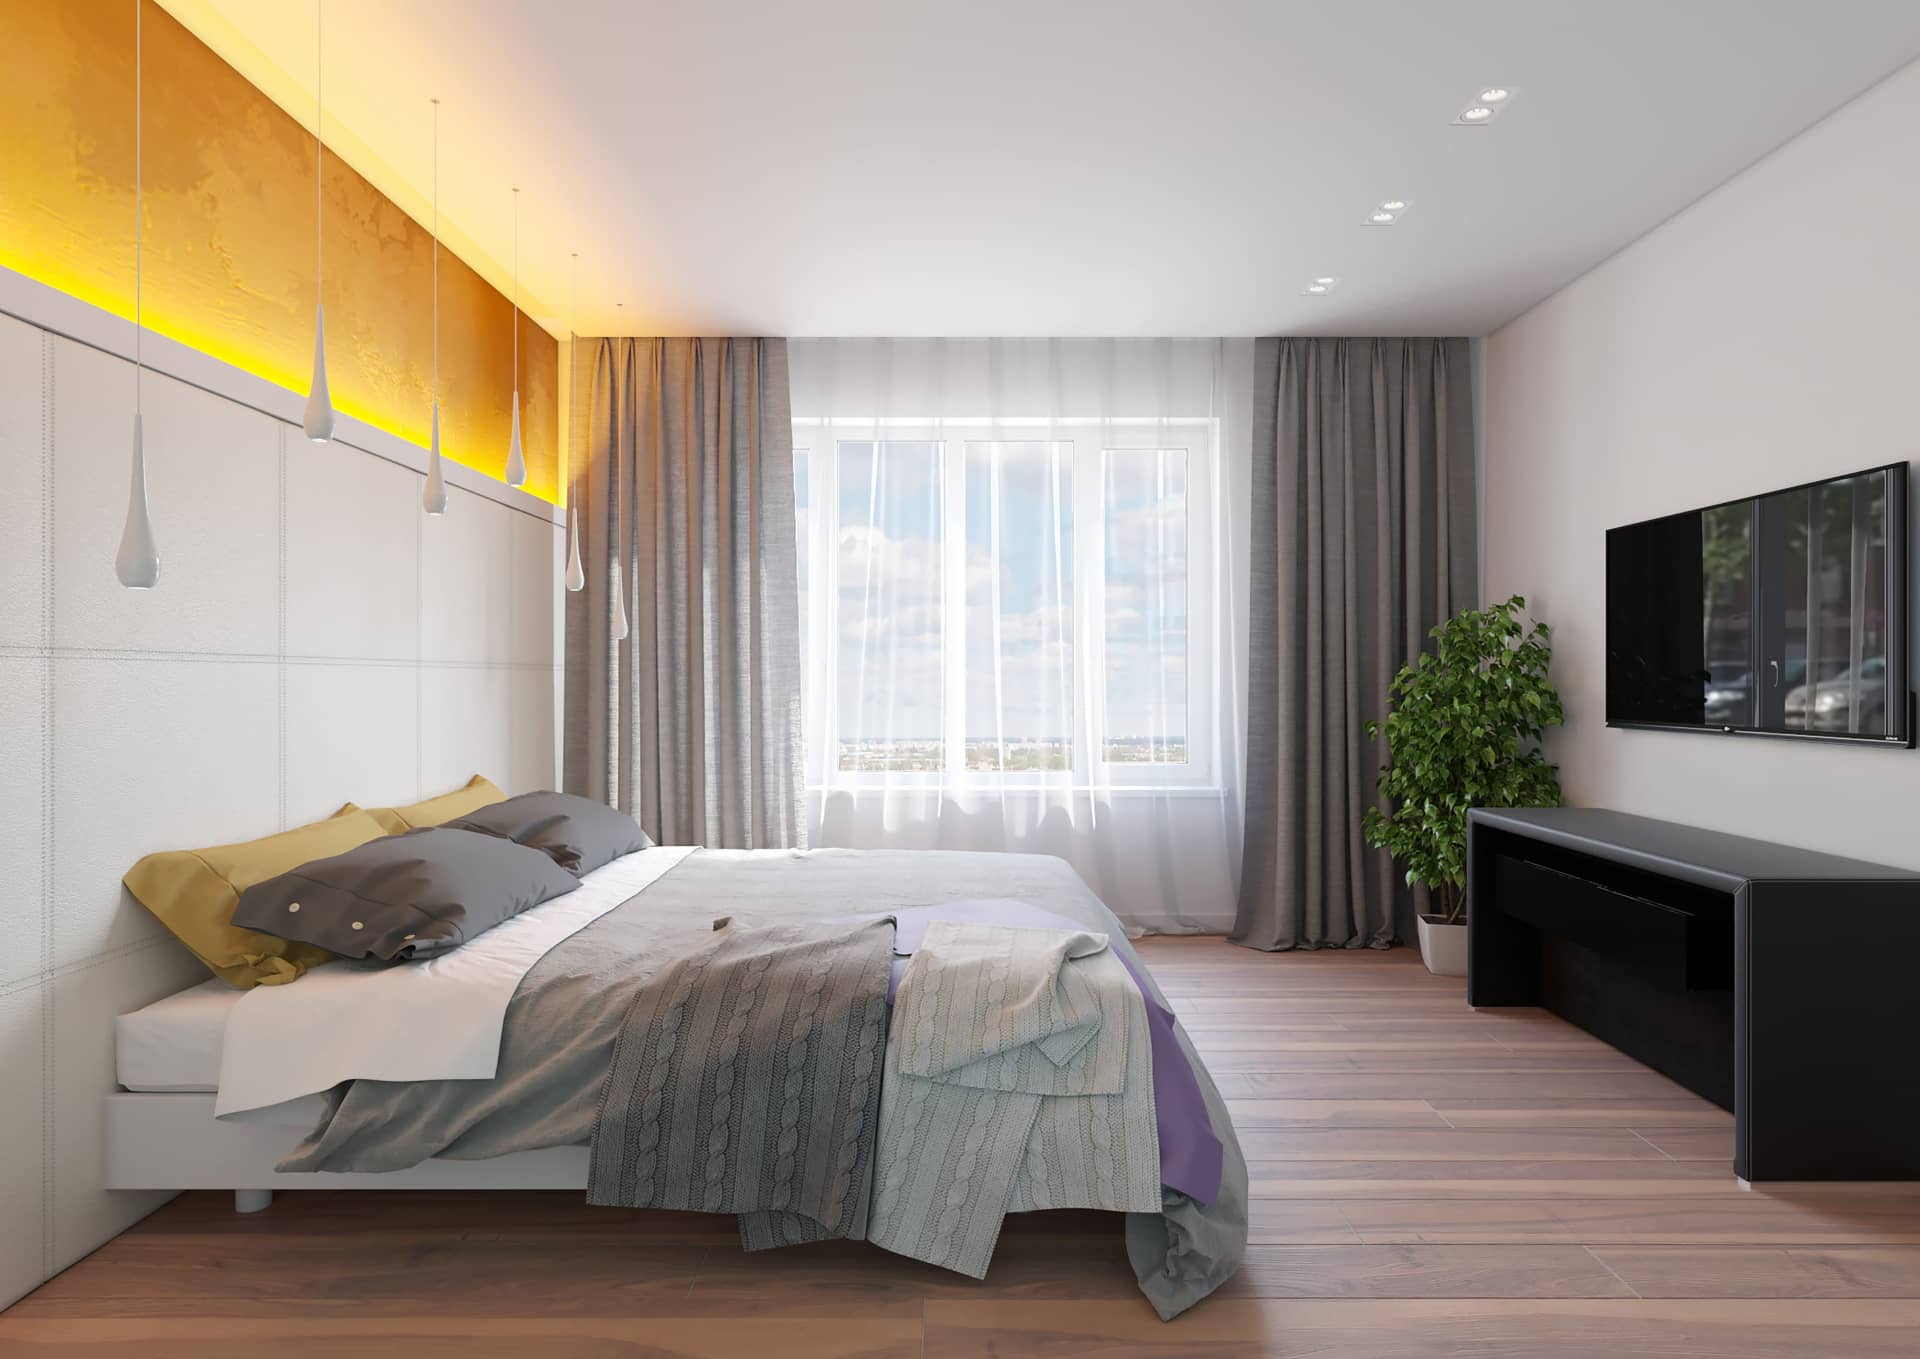 Золотистая подсветка над кроватью в спальне в стиле минимализм